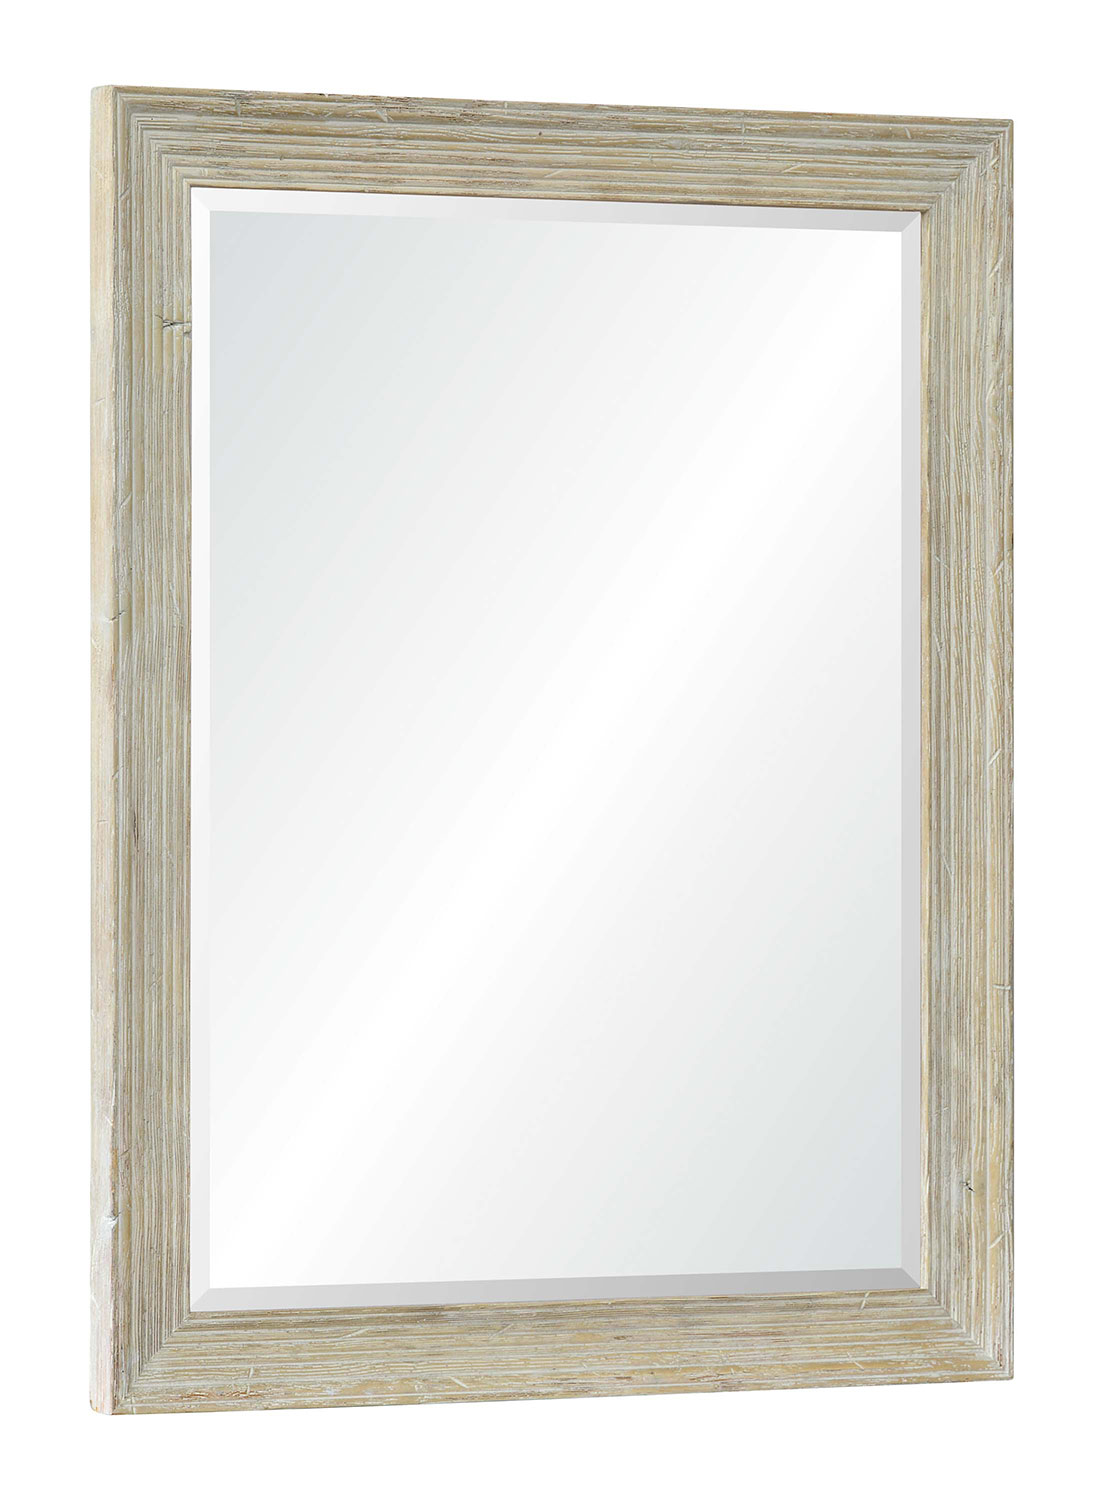 Ren-Wil Dora Rectangular Mirror - Stain